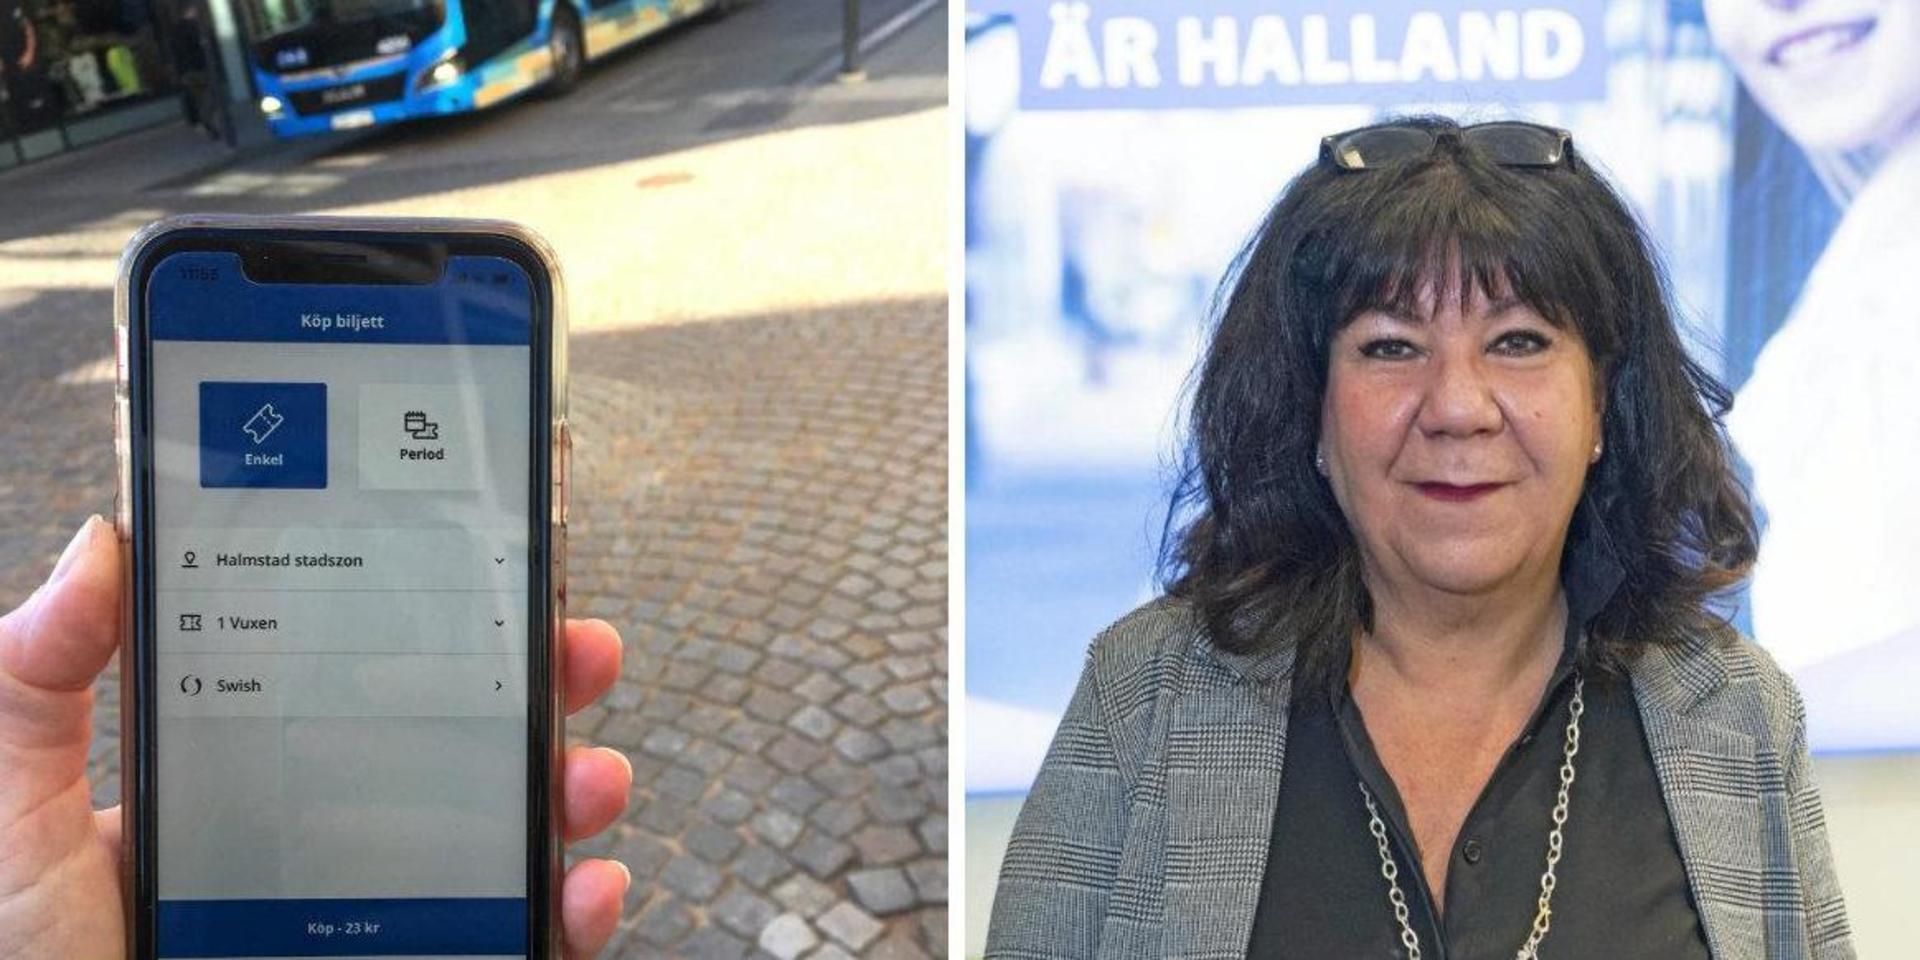 Hallandstrafikens nya app har redan uppdaterats fem gånger och marknadschef Yasmine Möllerström-Henstam säger att det fler funktioner på gång. Bland annat ska det snart gå att välja Klarna som betalsätt.